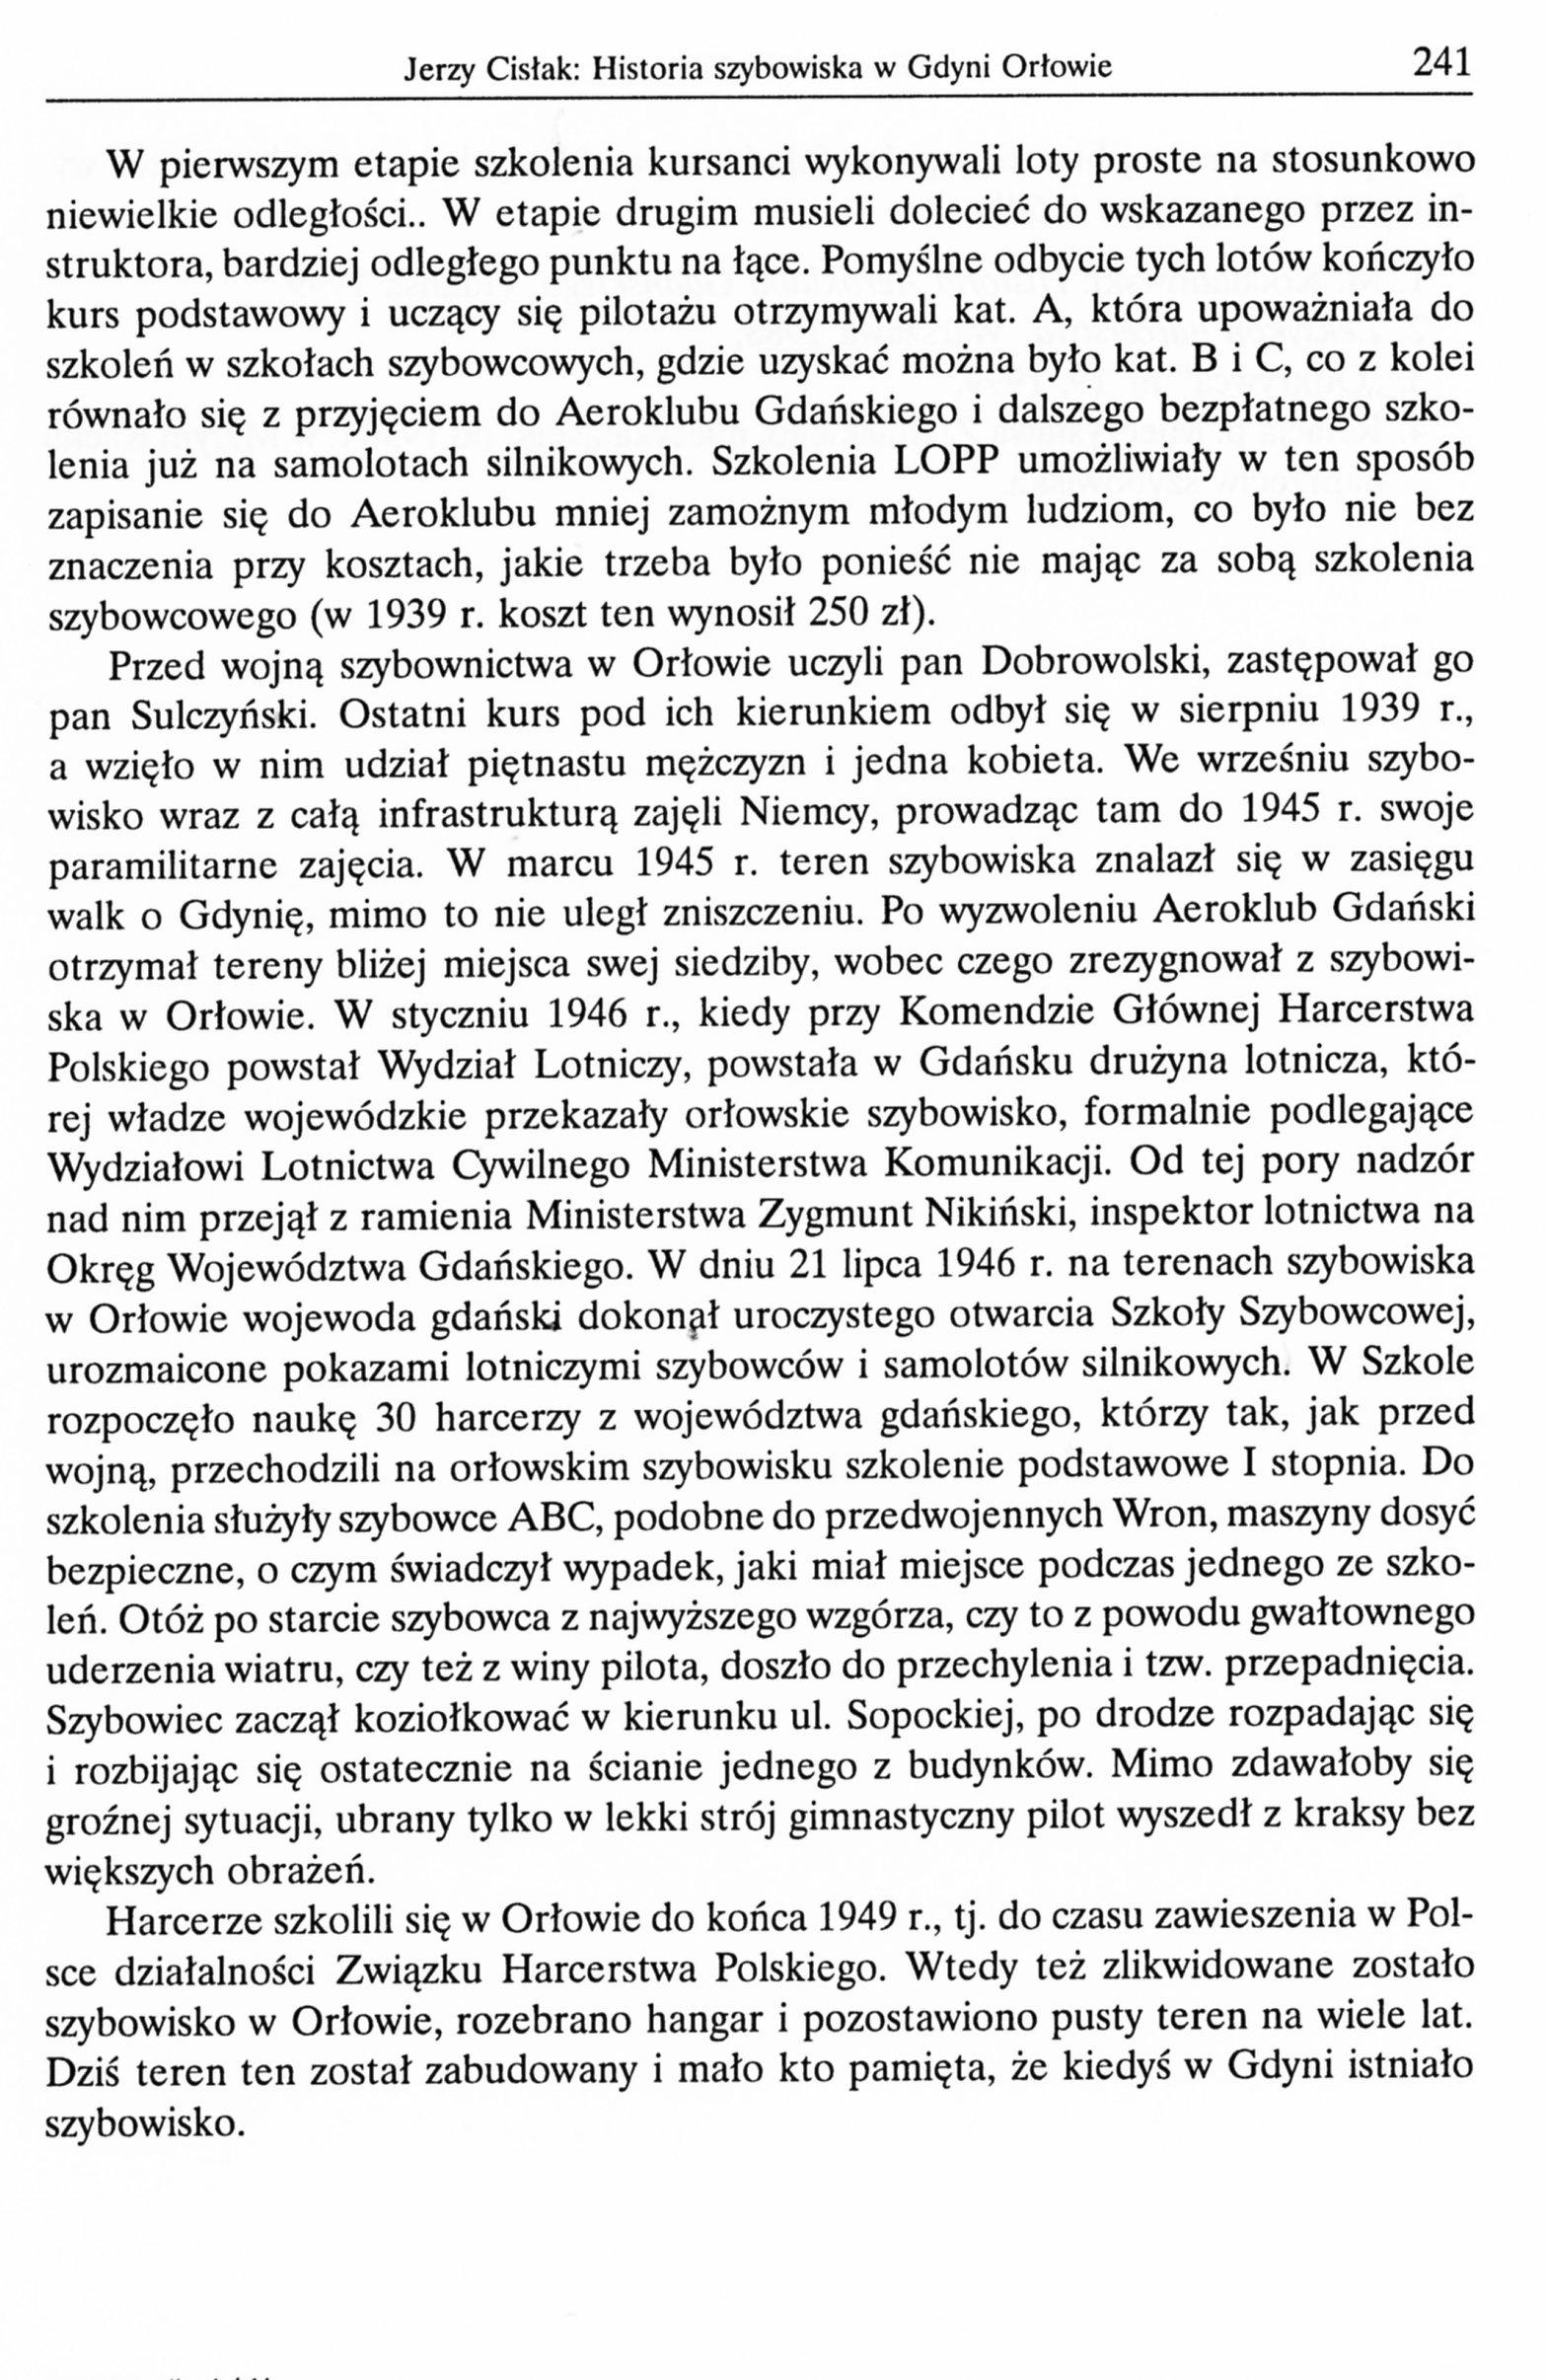 Historia szybowiska w Gdyni Orłowie